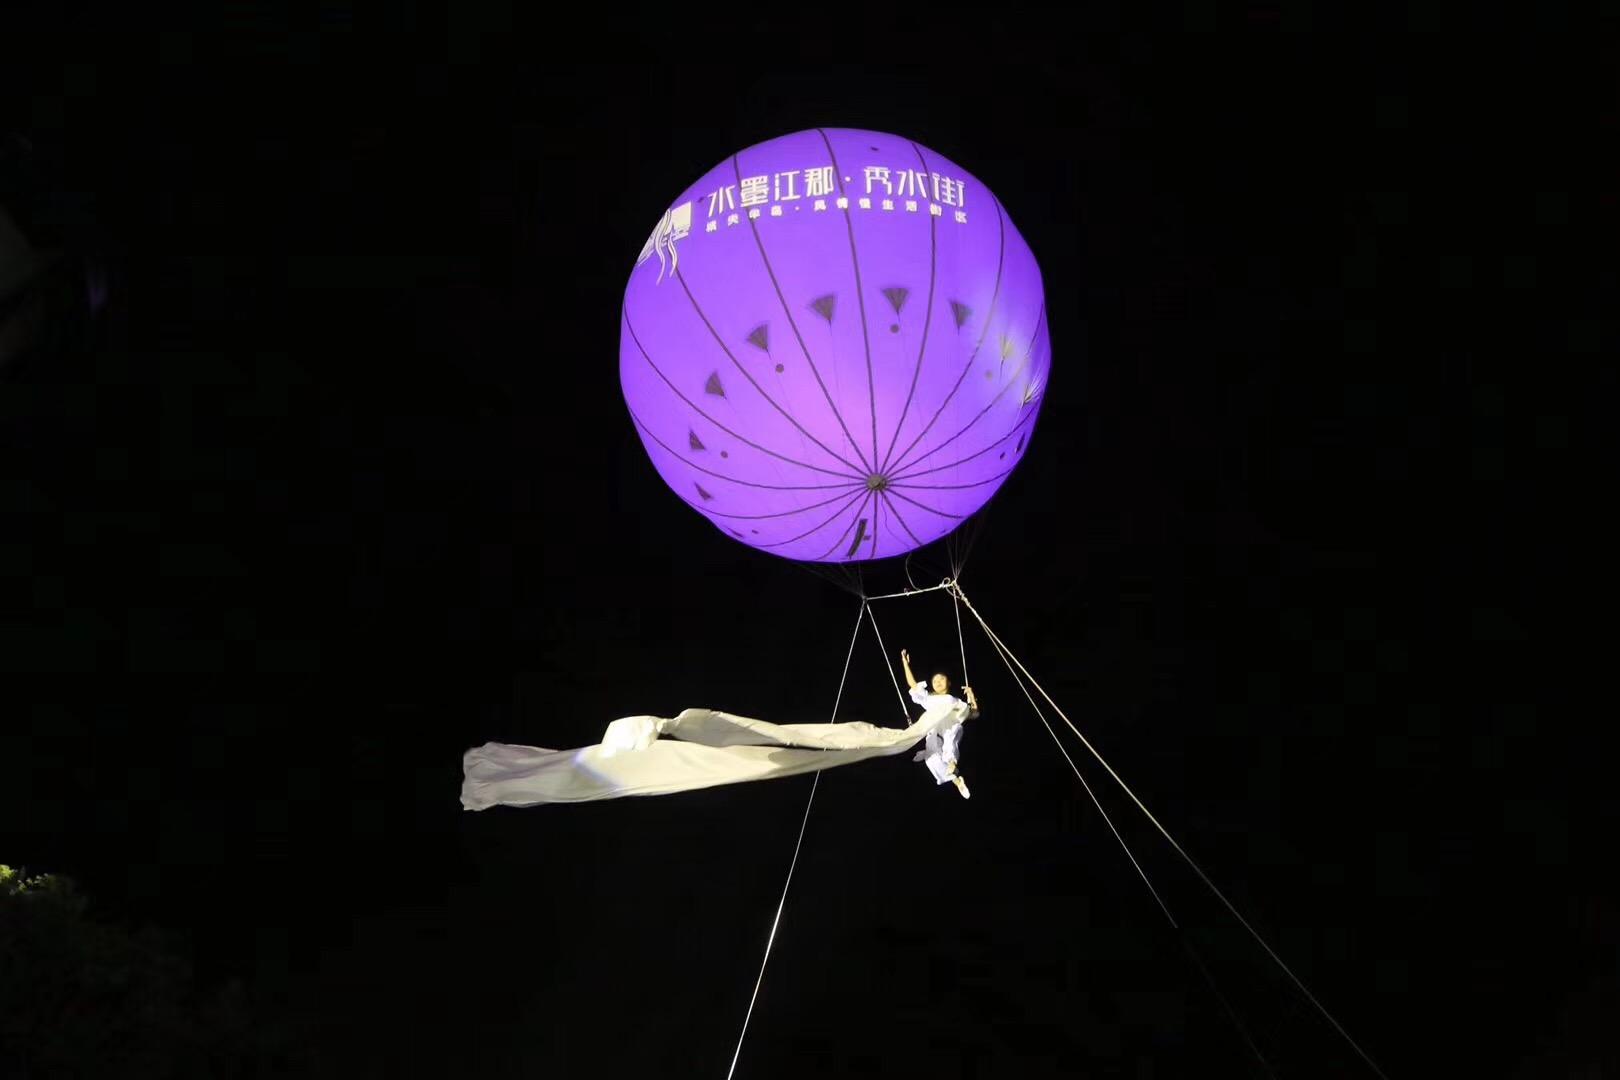 嫦娥奔月 飞天威亚 威亚制作 威亚设计 景区威亚 威亚设备